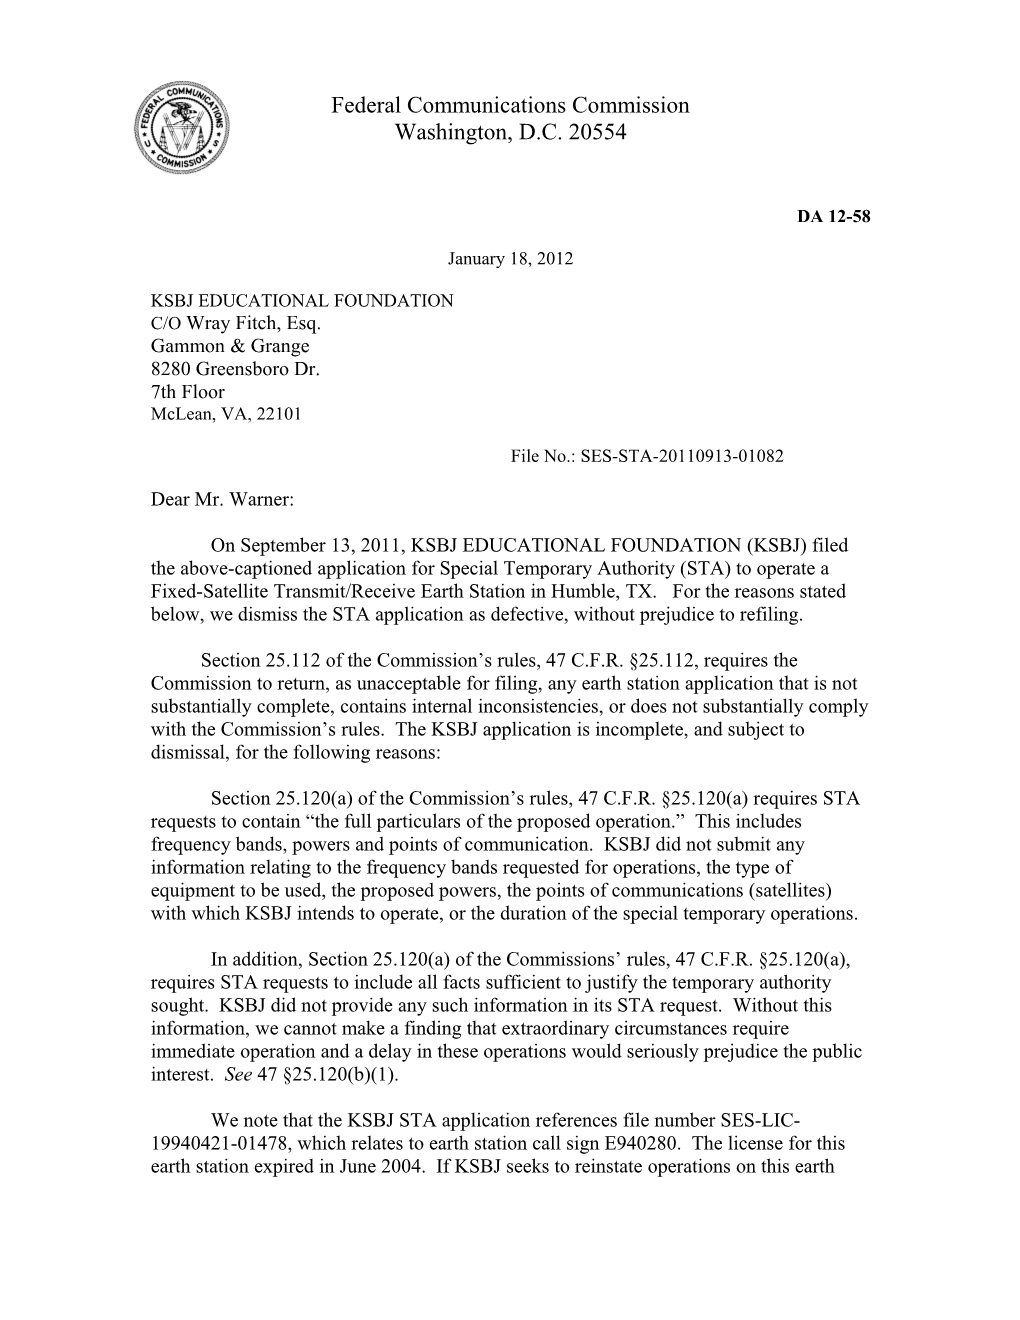 Federal Communications Commission DA 12-58